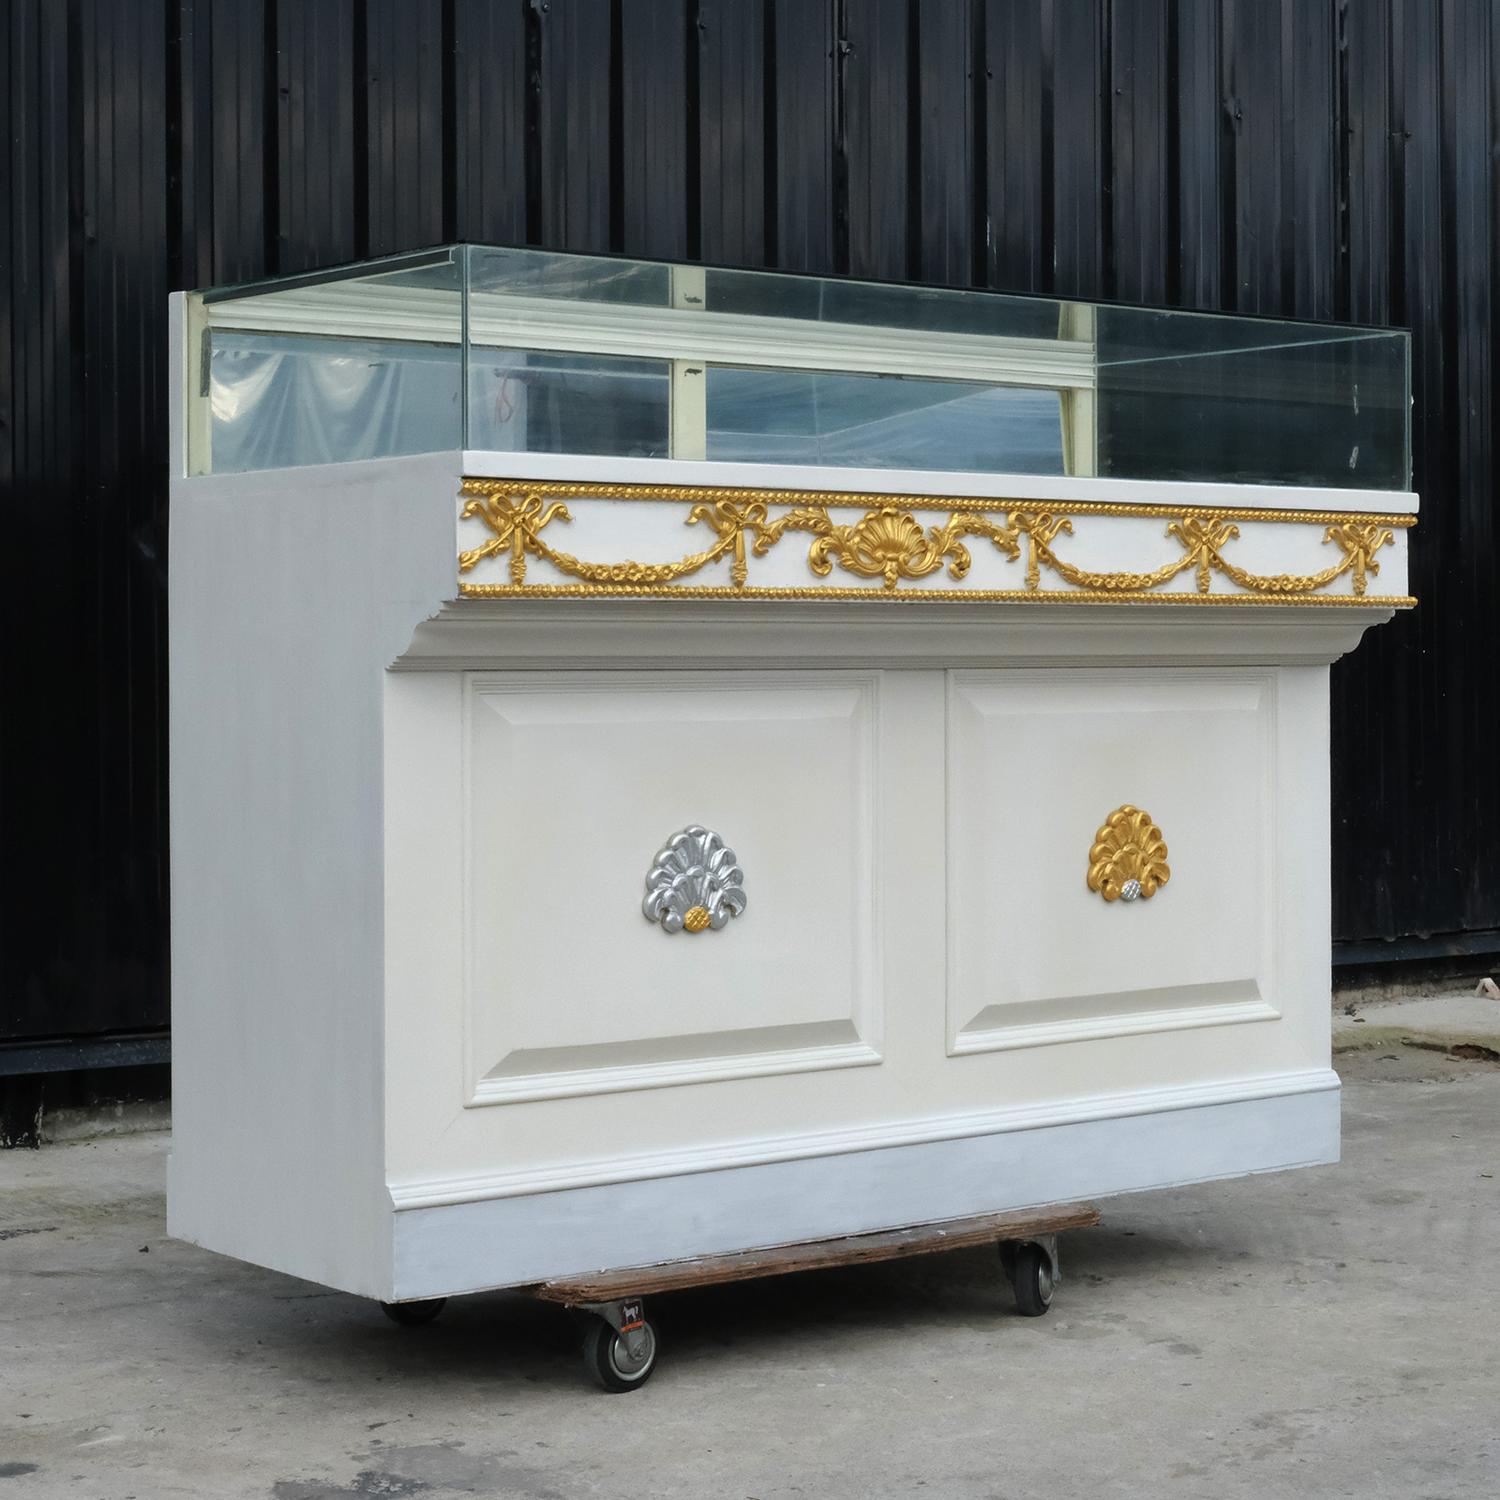 ตู้จิวเวอรี่ ตู้ขายเครื่องประดับ ตู้เพชร ตู้โชว์สินค้า ตู้สี่เหลี่ยม สีขาวทอง (5)